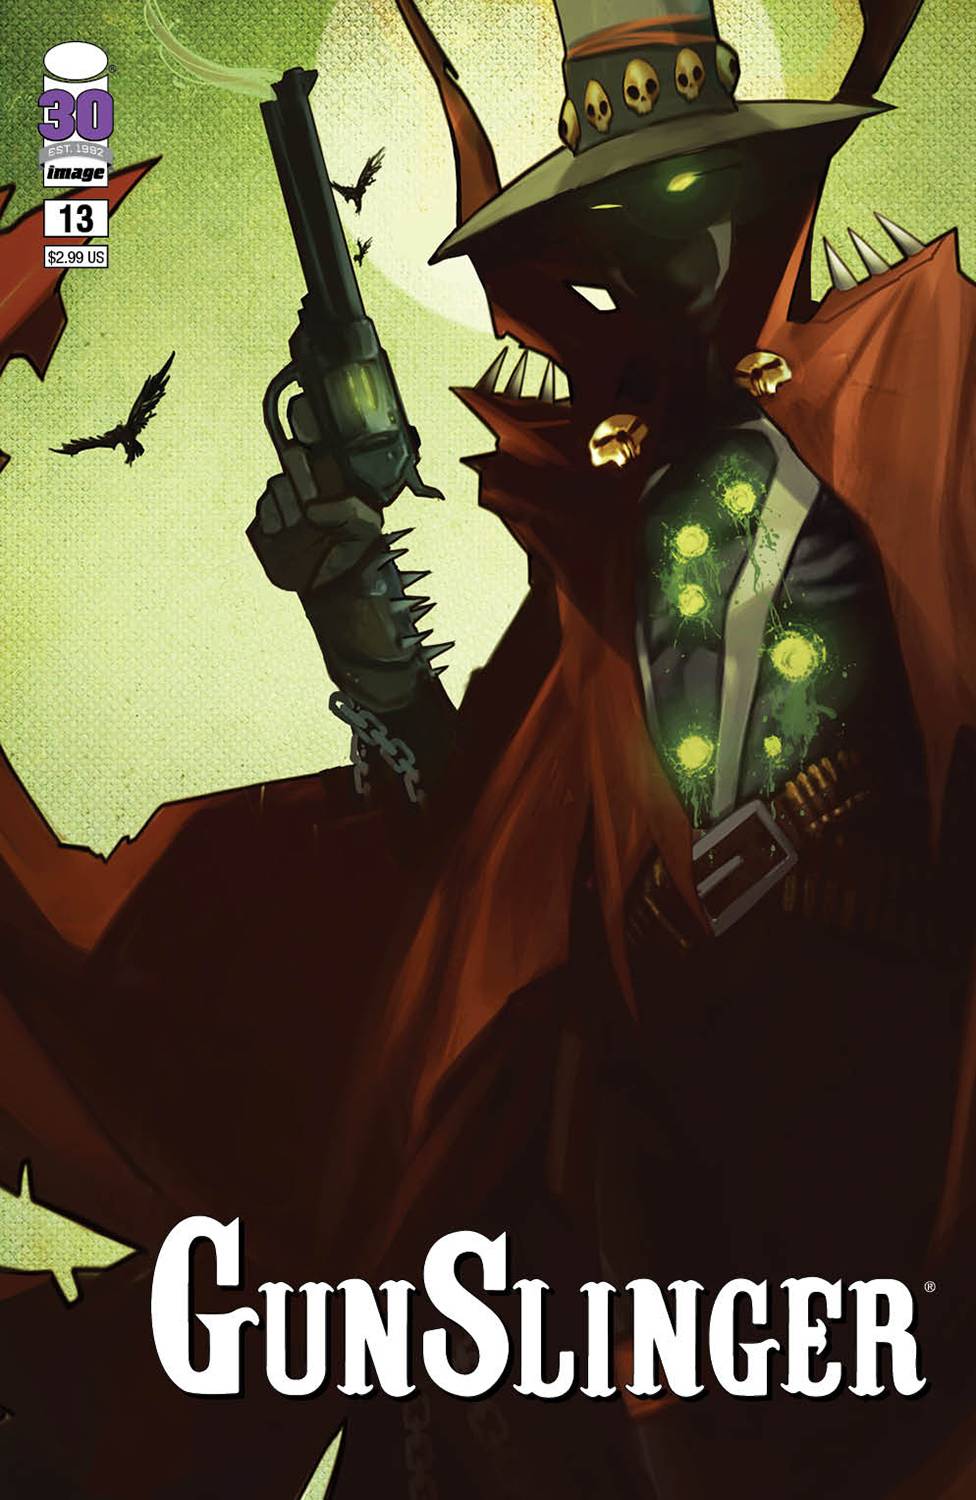 Gunslinger Spawn no. 13 (2021 Series) (Cover A)